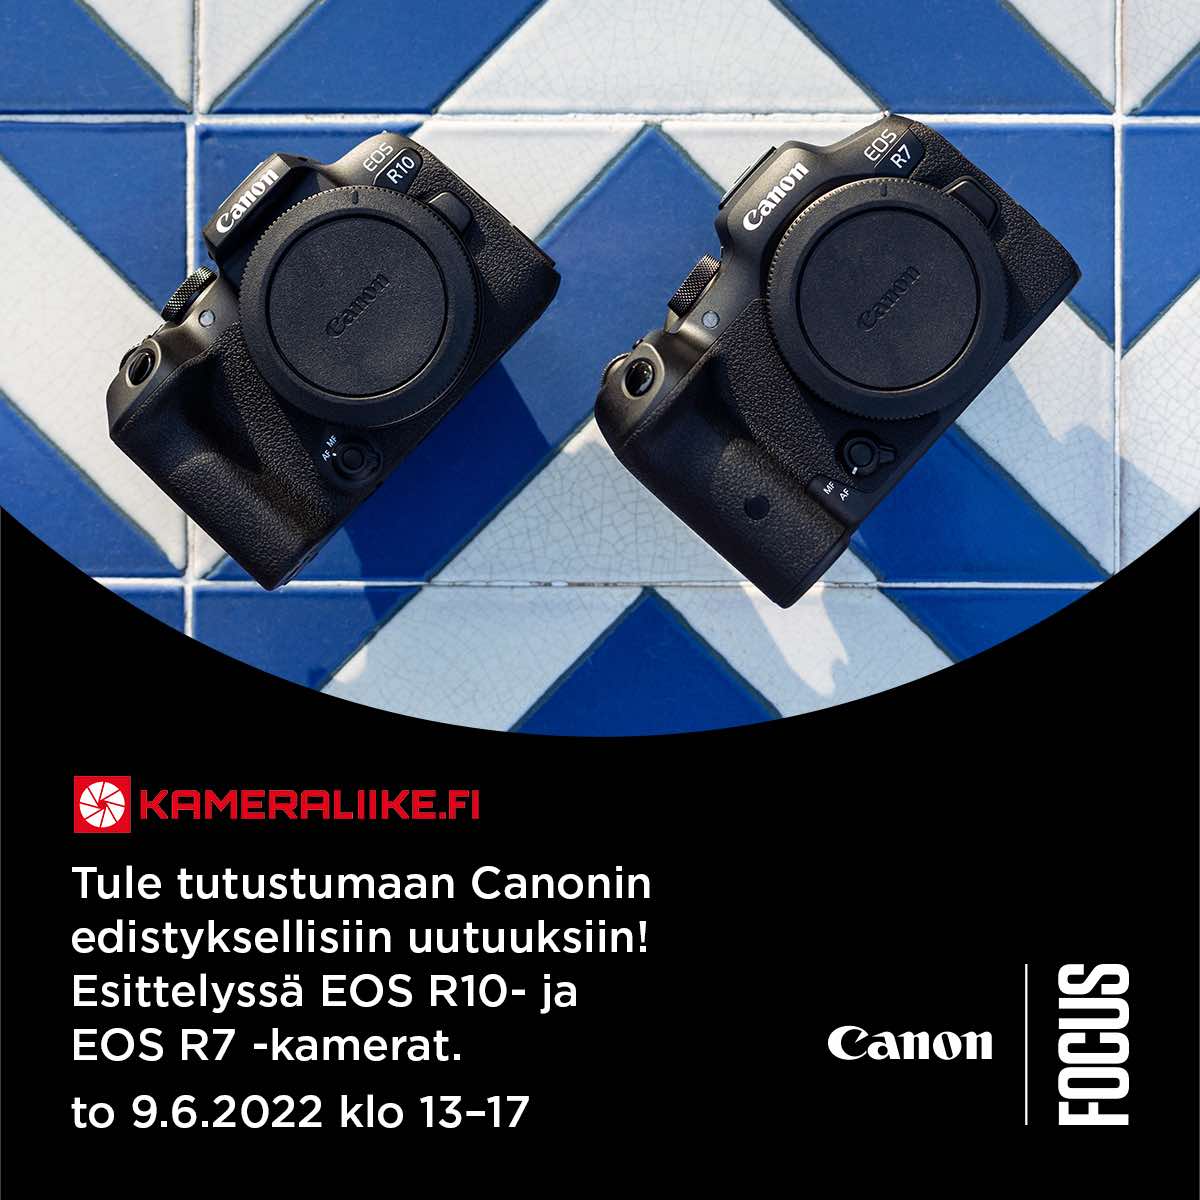 Canon esittelypäivä Mikkelissä 9.6. klo 14-17